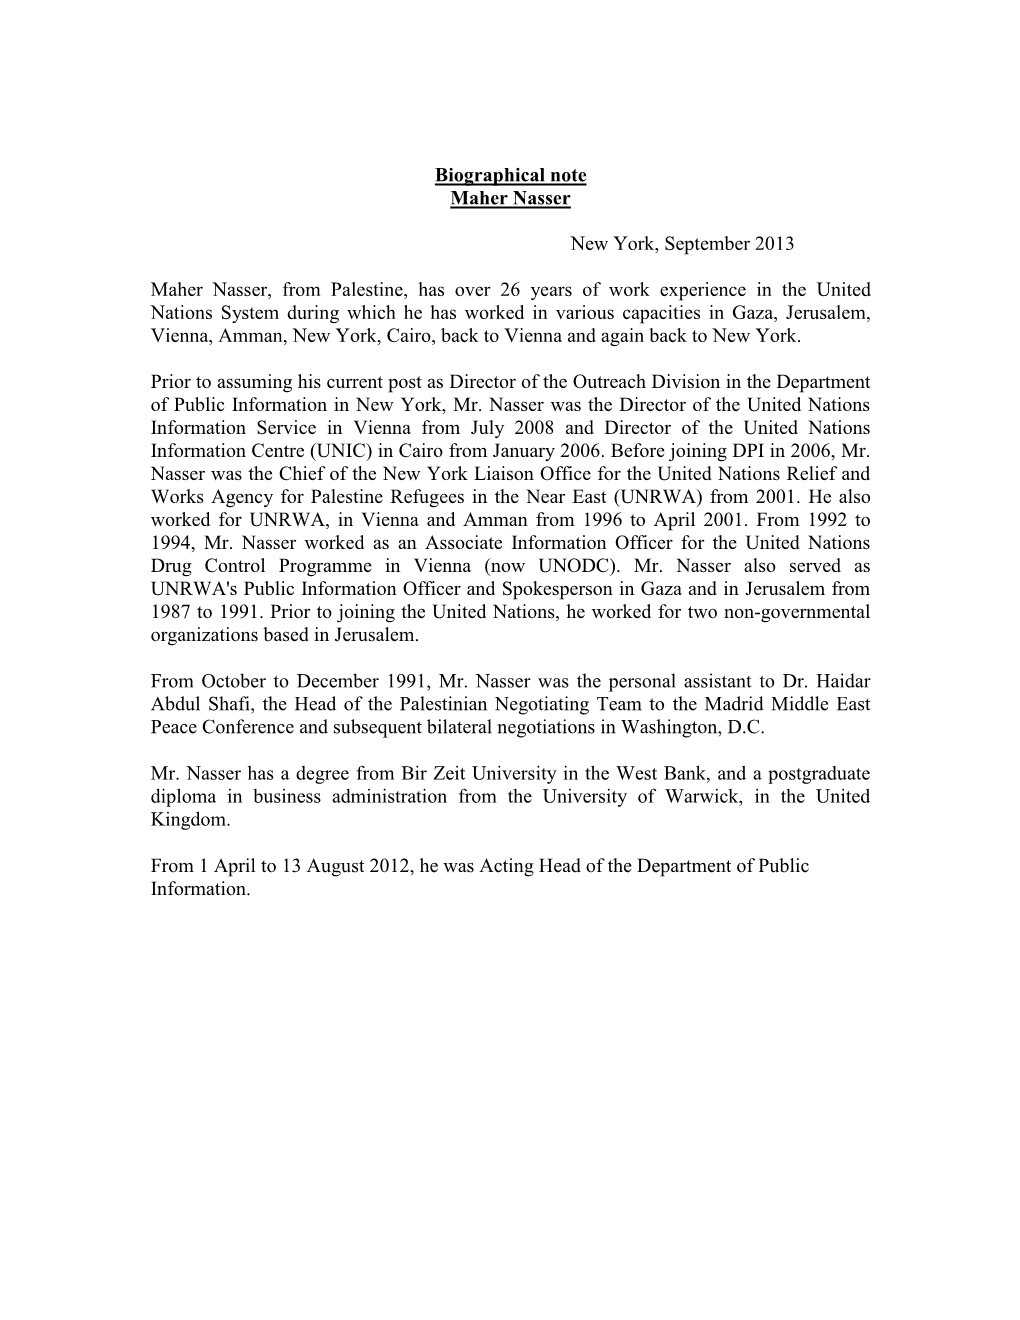 Biographical Note Maher Nasser New York, September 2013 Maher